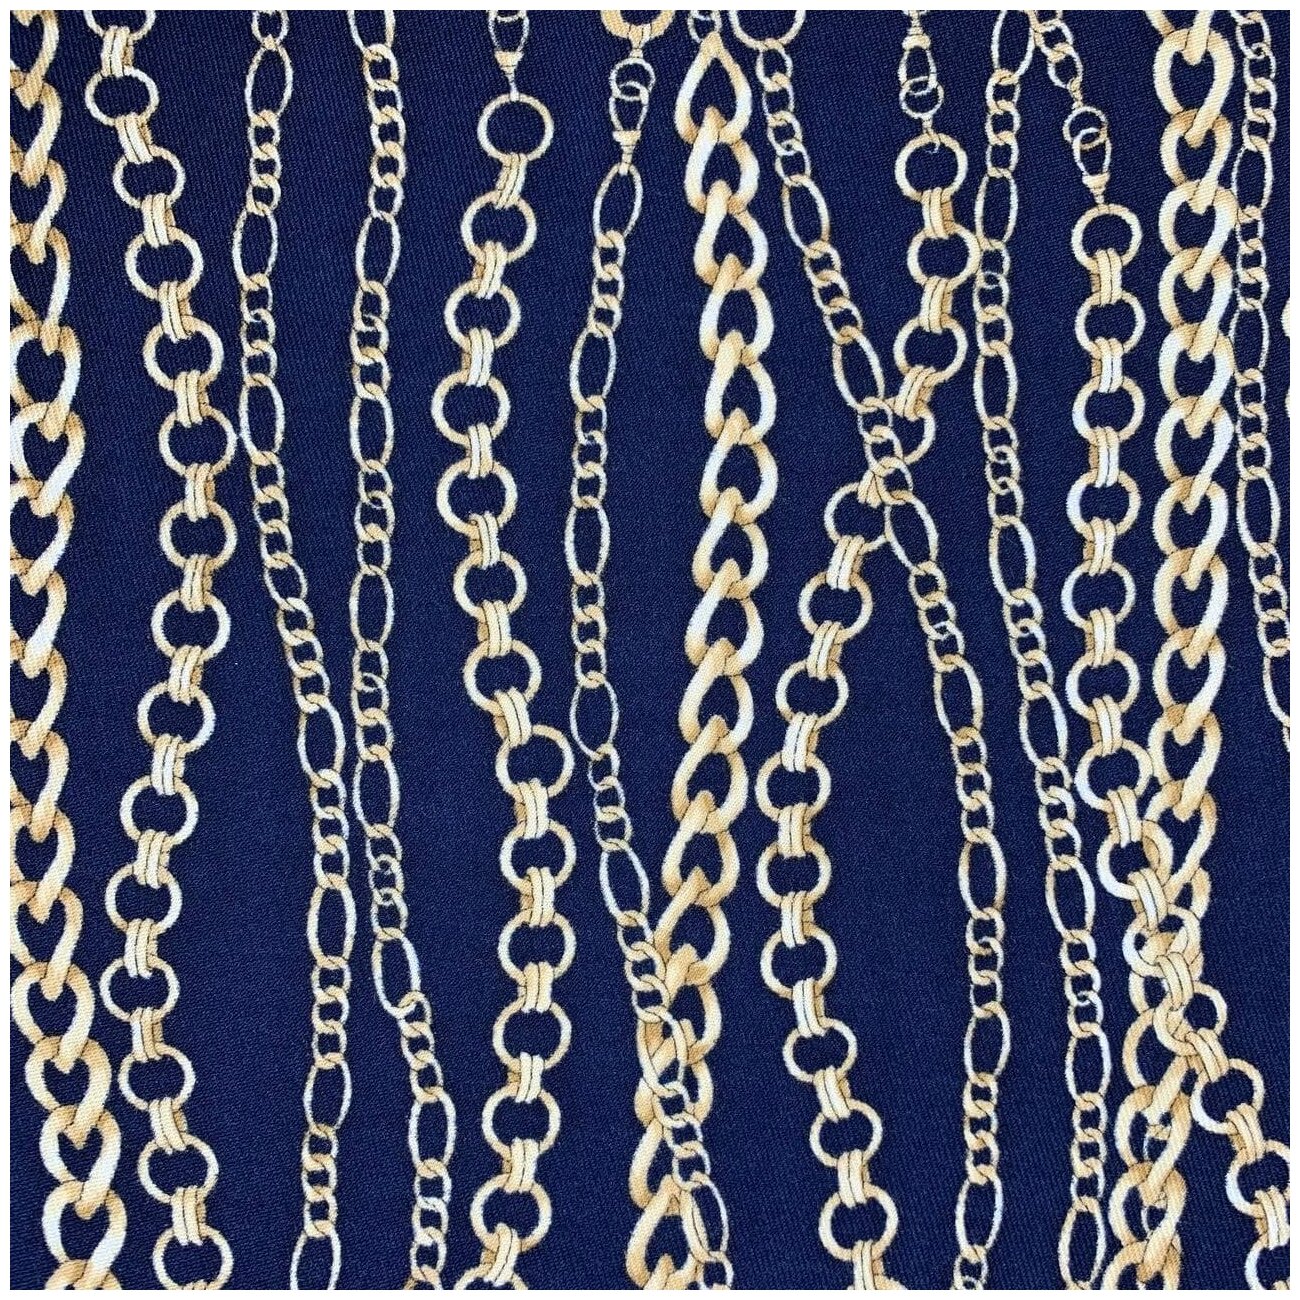 Ткань костюмная bibliotex темно-синего цвета с принтом в виде цепей. Шерсть 100%. Италия. 0,5 м (ширина 160 см)